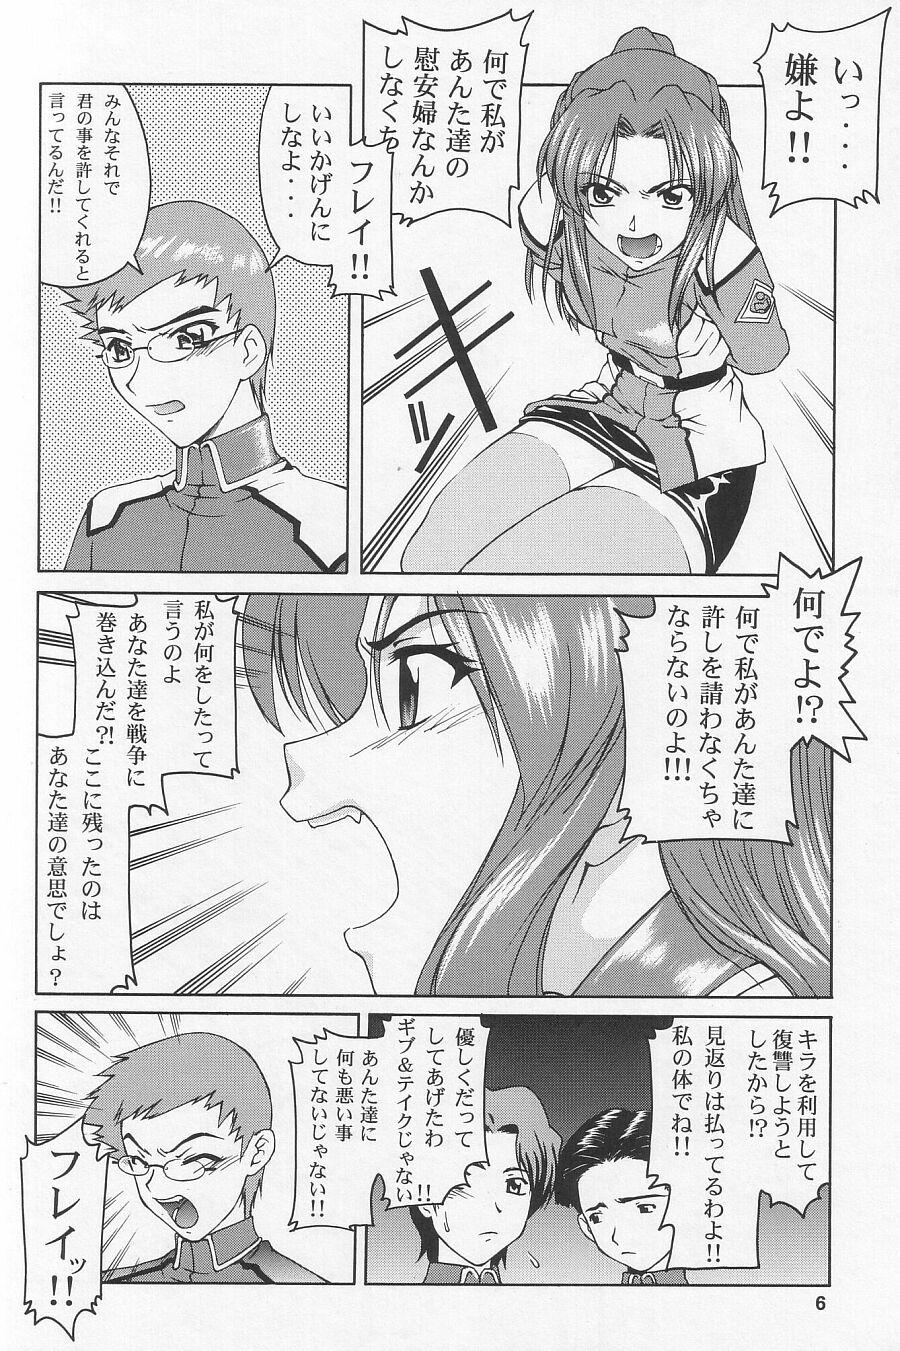 Gaysex Emotion - Gundam seed Free Blowjob Porn - Page 6